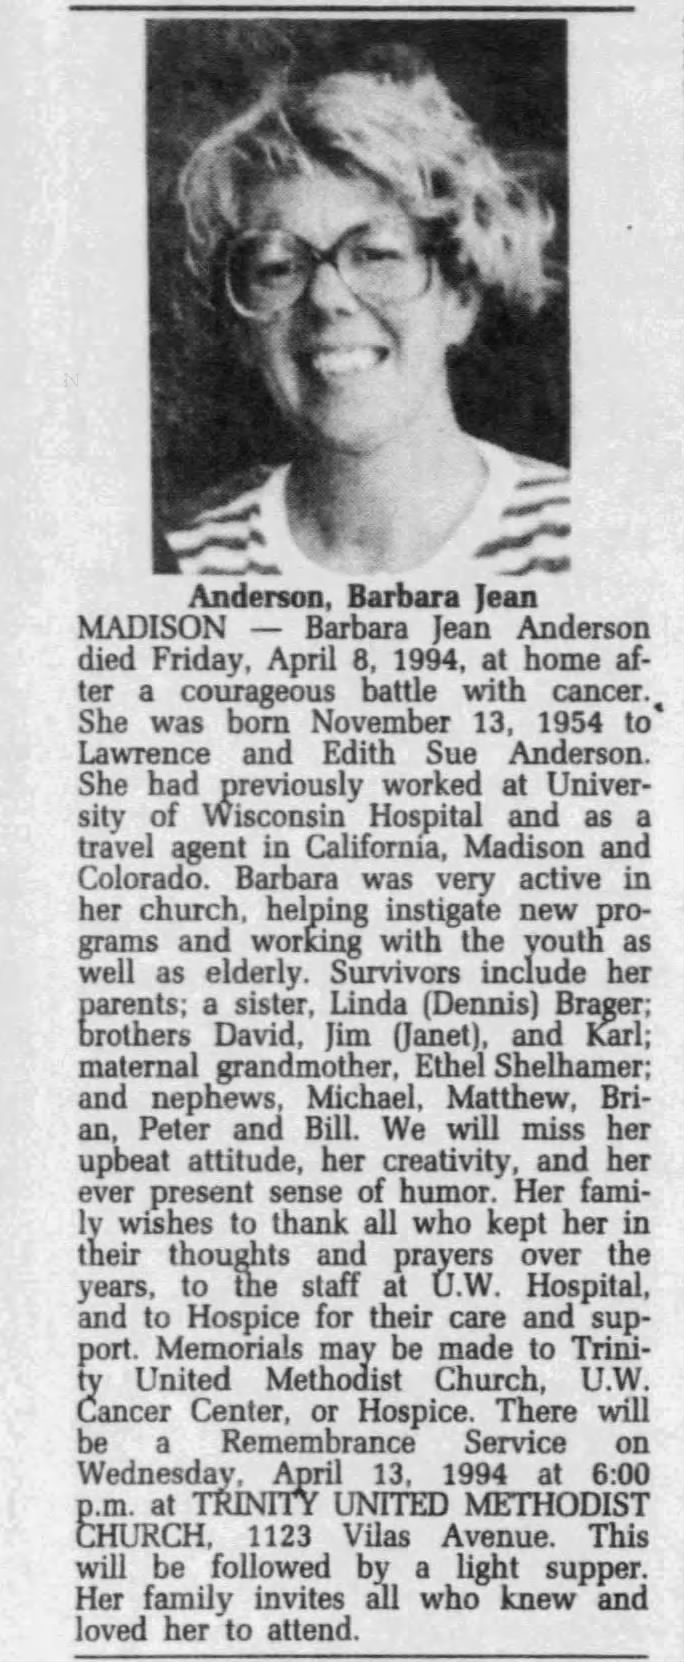 Obituary for Barbara Jean Anderson, 1954-1994